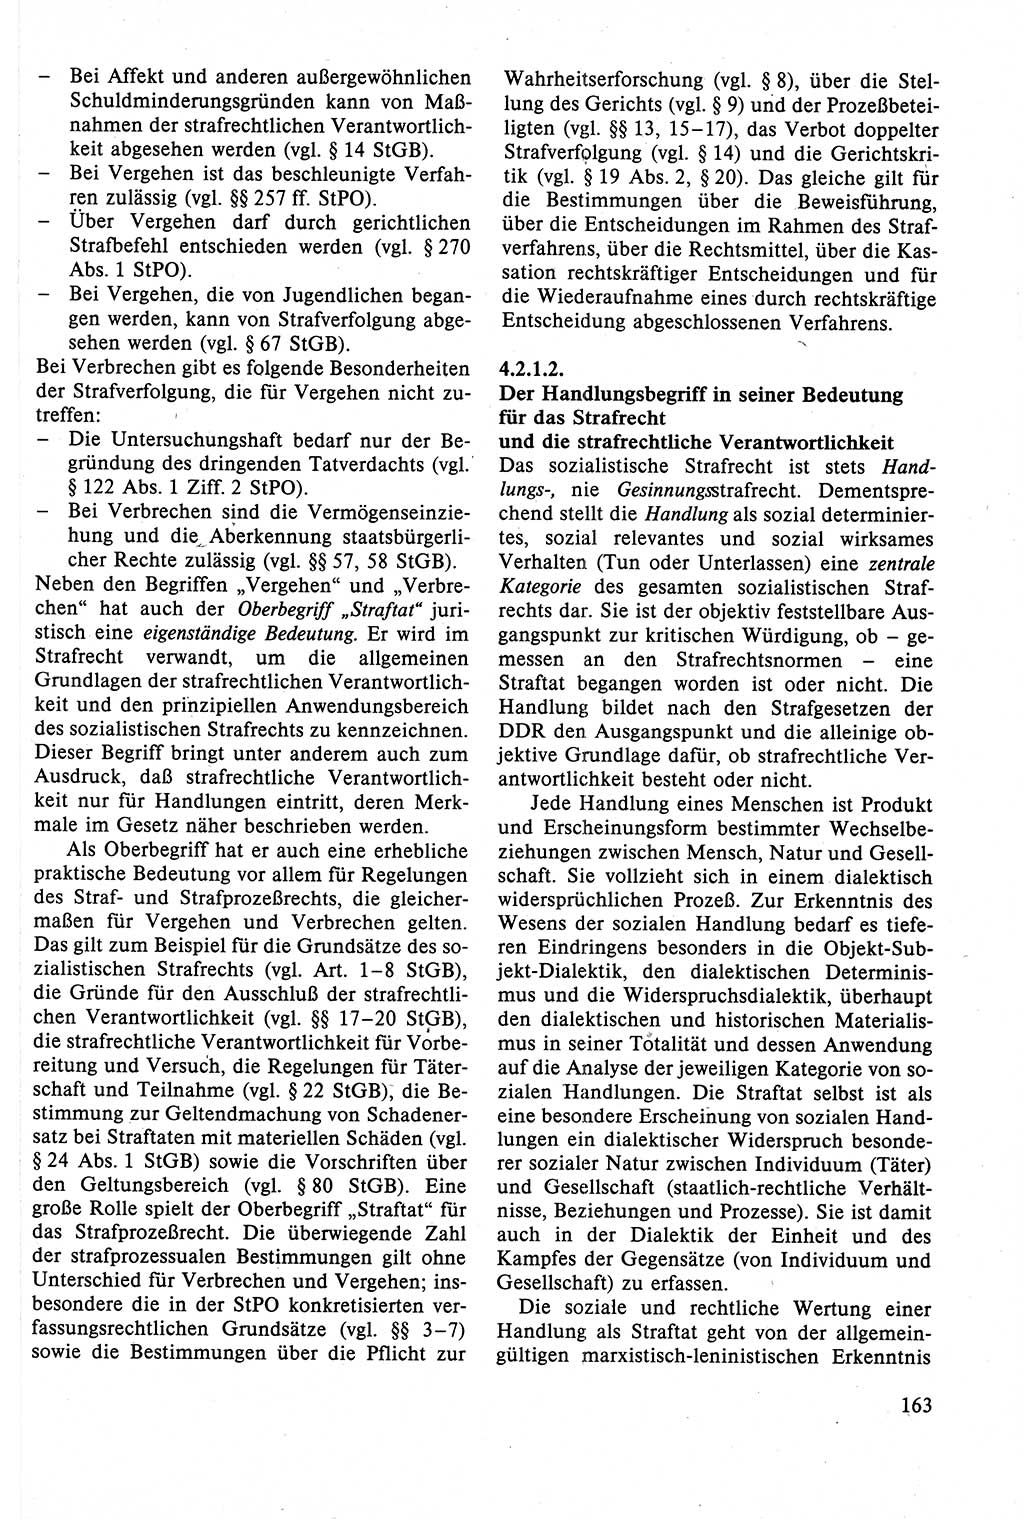 Strafrecht der DDR (Deutsche Demokratische Republik), Lehrbuch 1988, Seite 163 (Strafr. DDR Lb. 1988, S. 163)